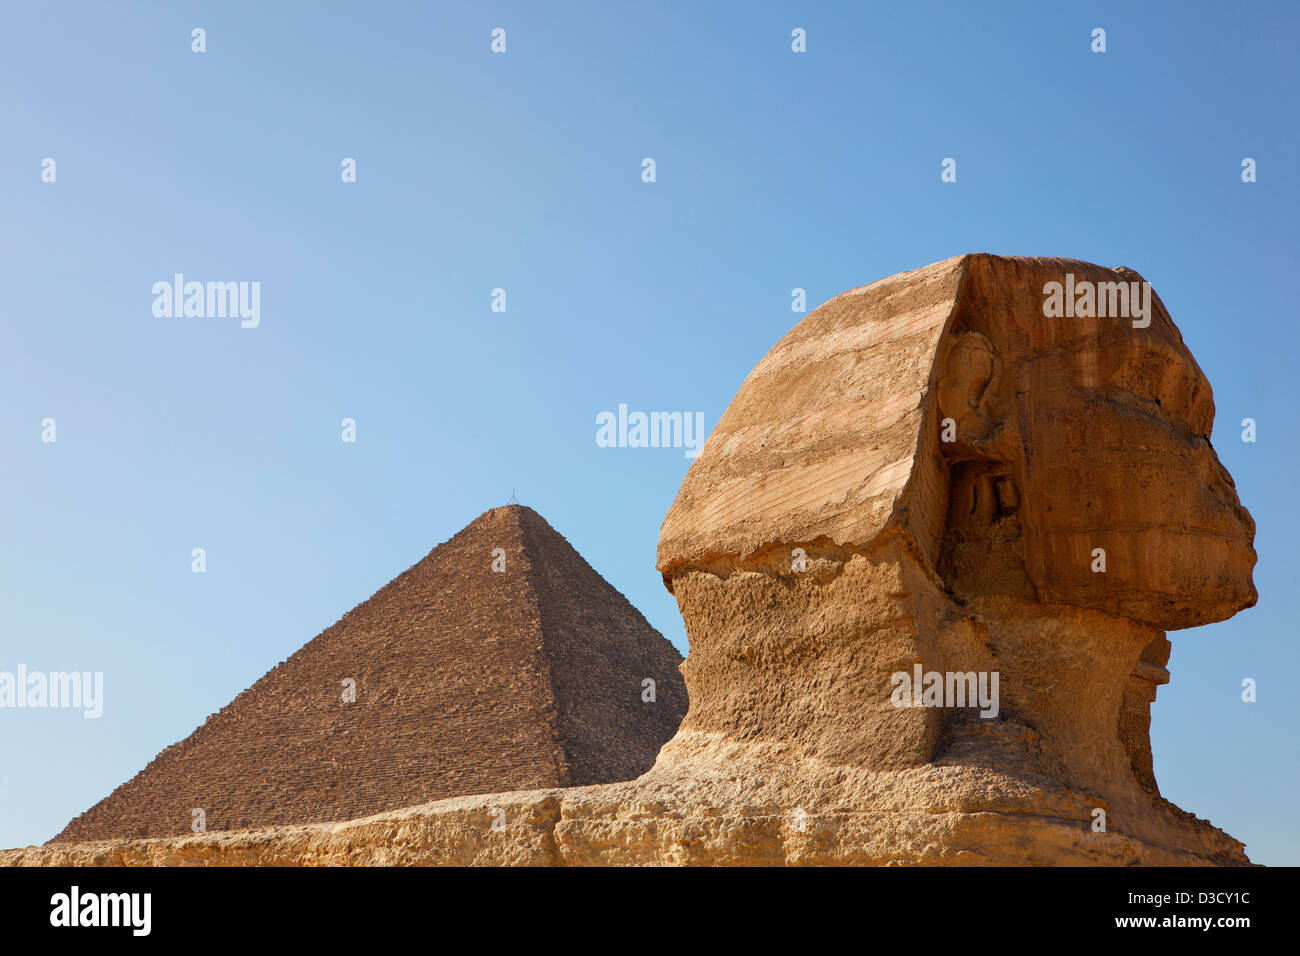 Pyramides de Gizeh au Caire, Egypte Banque D'Images